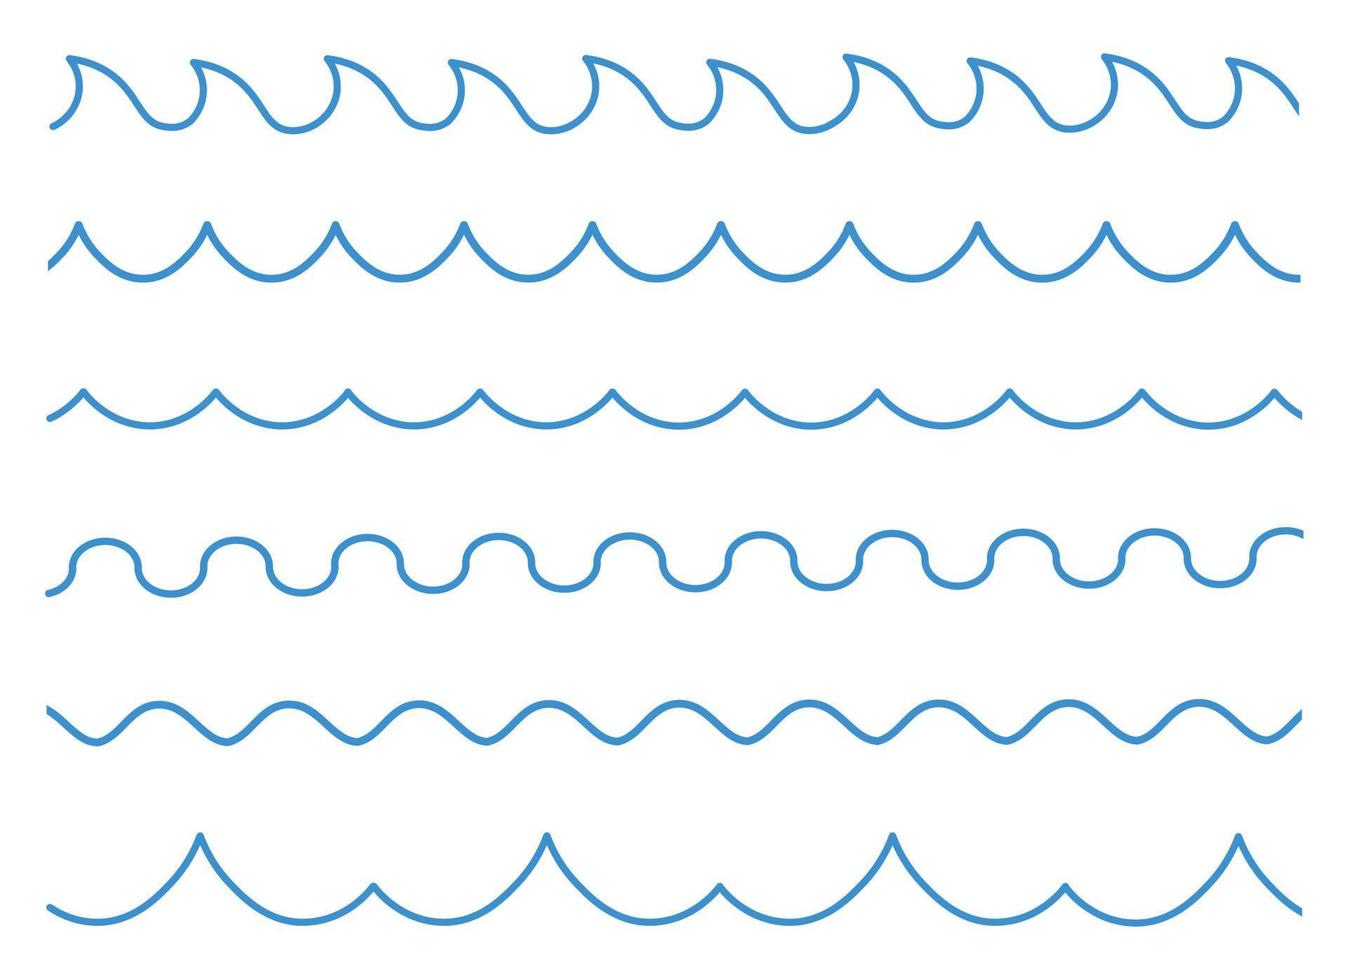 Wellenvektor-Designillustration lokalisiert auf weißem Hintergrund vektor